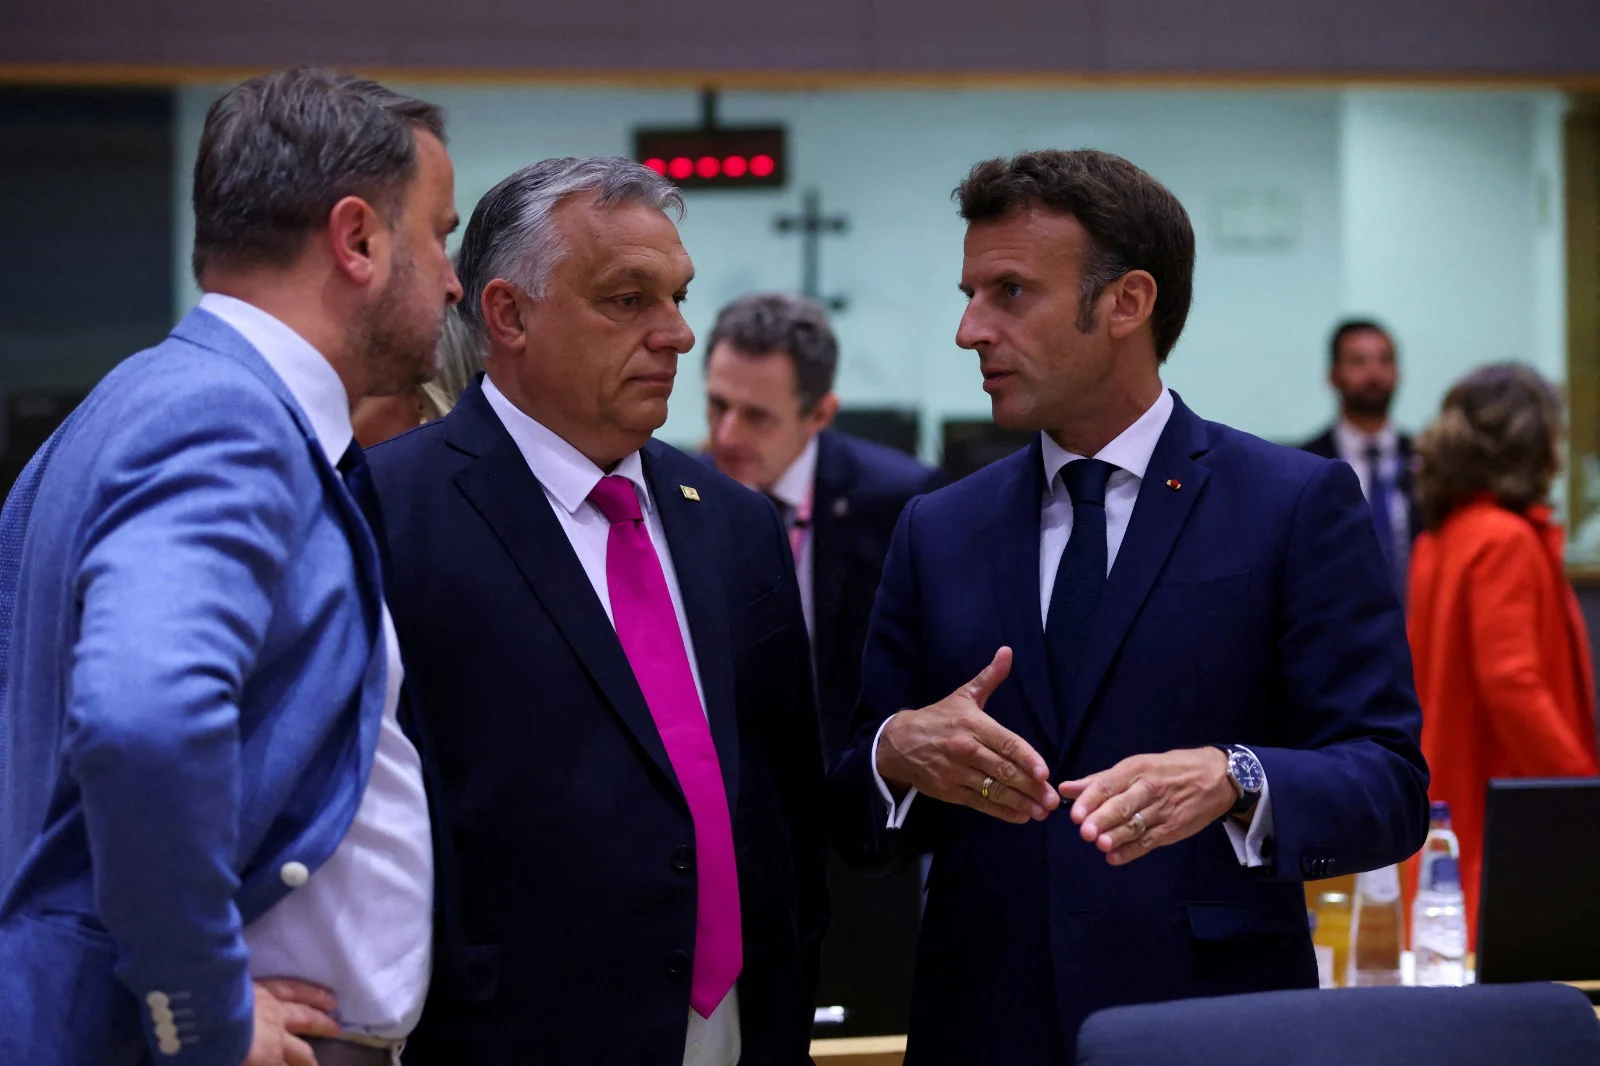 נשיא צרפת עמנואל מקרון וראש ממשלת הונגריה ויקטור אורבן בפסגת האיחוד האירופי בבריסל